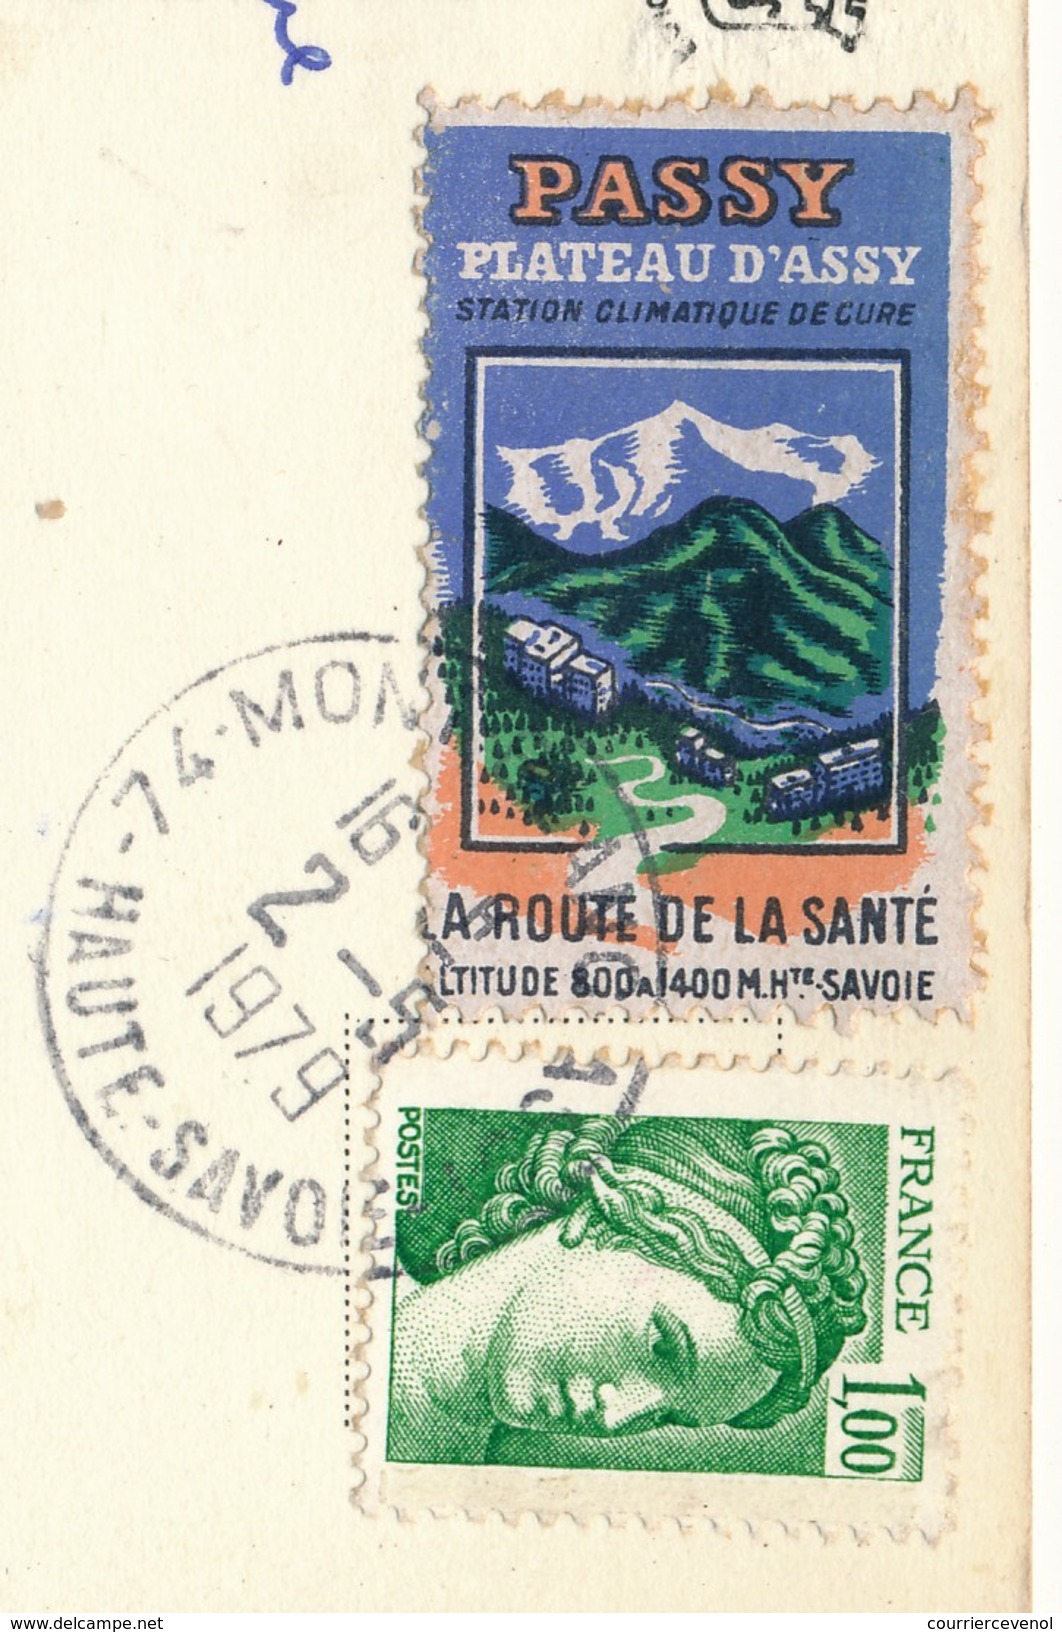 FRANCE => Vignette "Passy, Plateau D'Assy - La Route De La Santé" Sur Carte Postale 1979 - Lettere